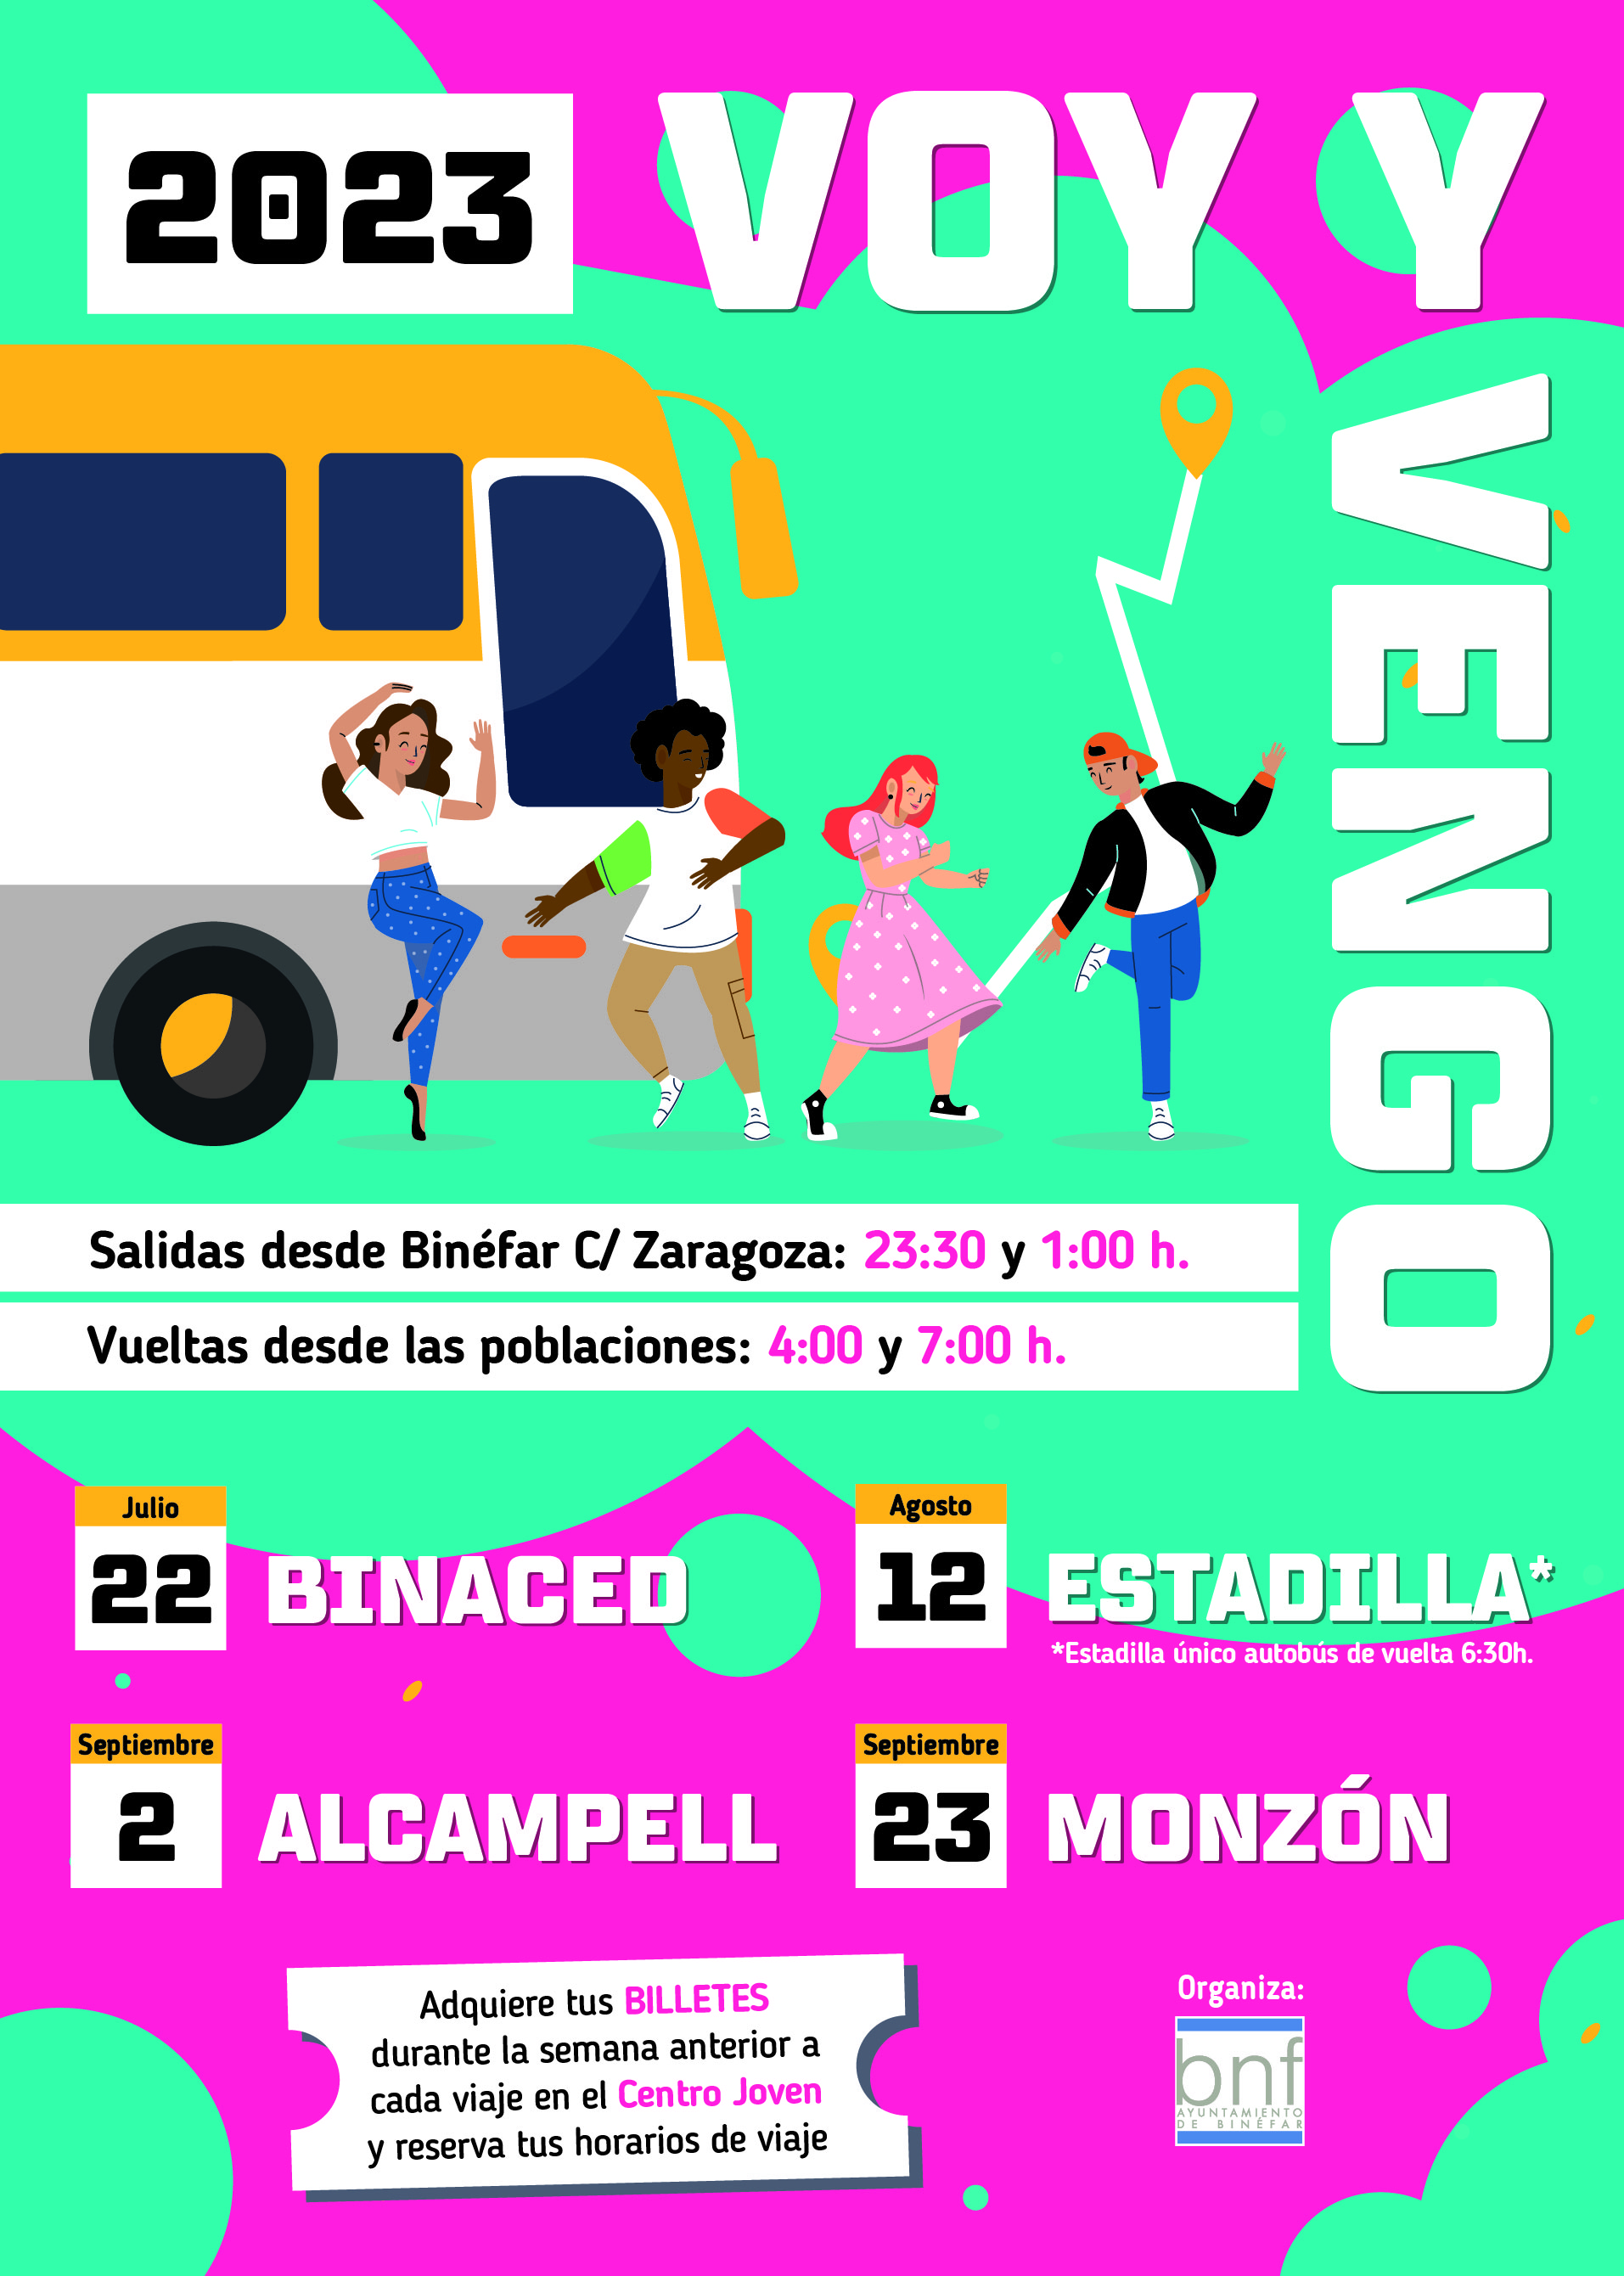 El autobús “Voy y Vengo” se estrena con las fiestas de Binaced